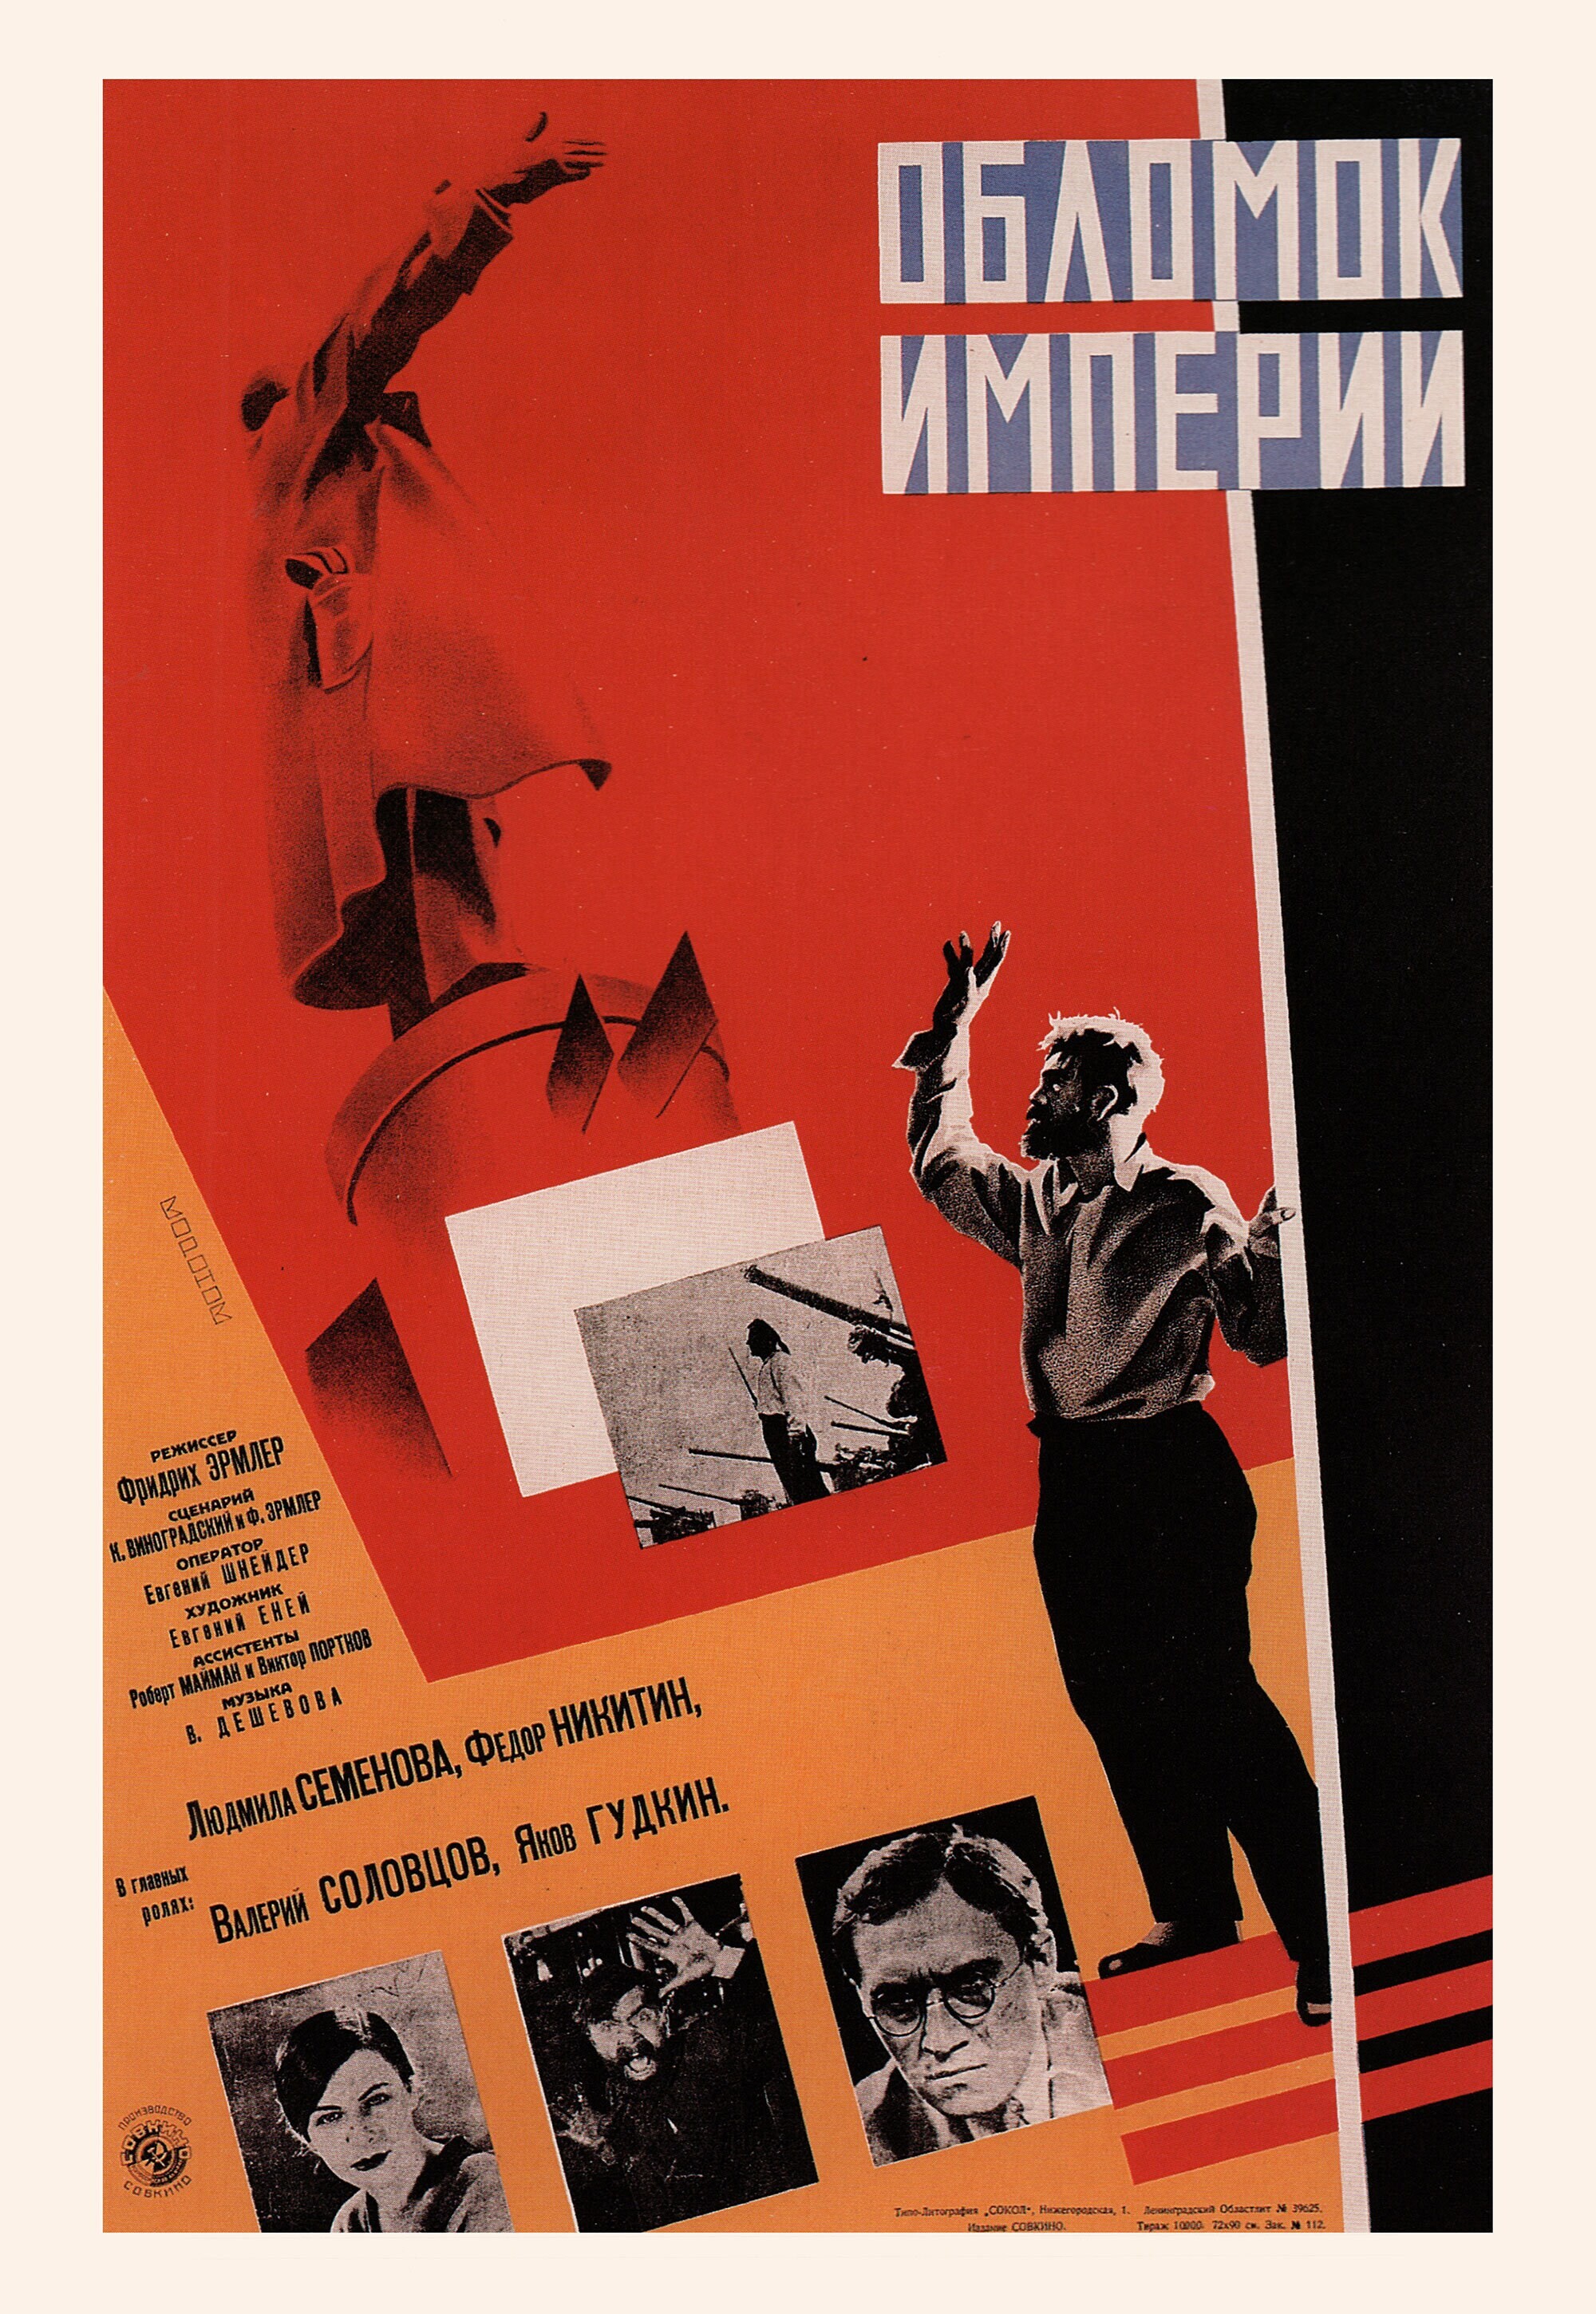 Обломок империи, 1929 год, режиссёр Фридрих Эрмлер, плакат к фильму, автор Леонид Александрович Воронов (авангардное советское искусство, 1920-е)